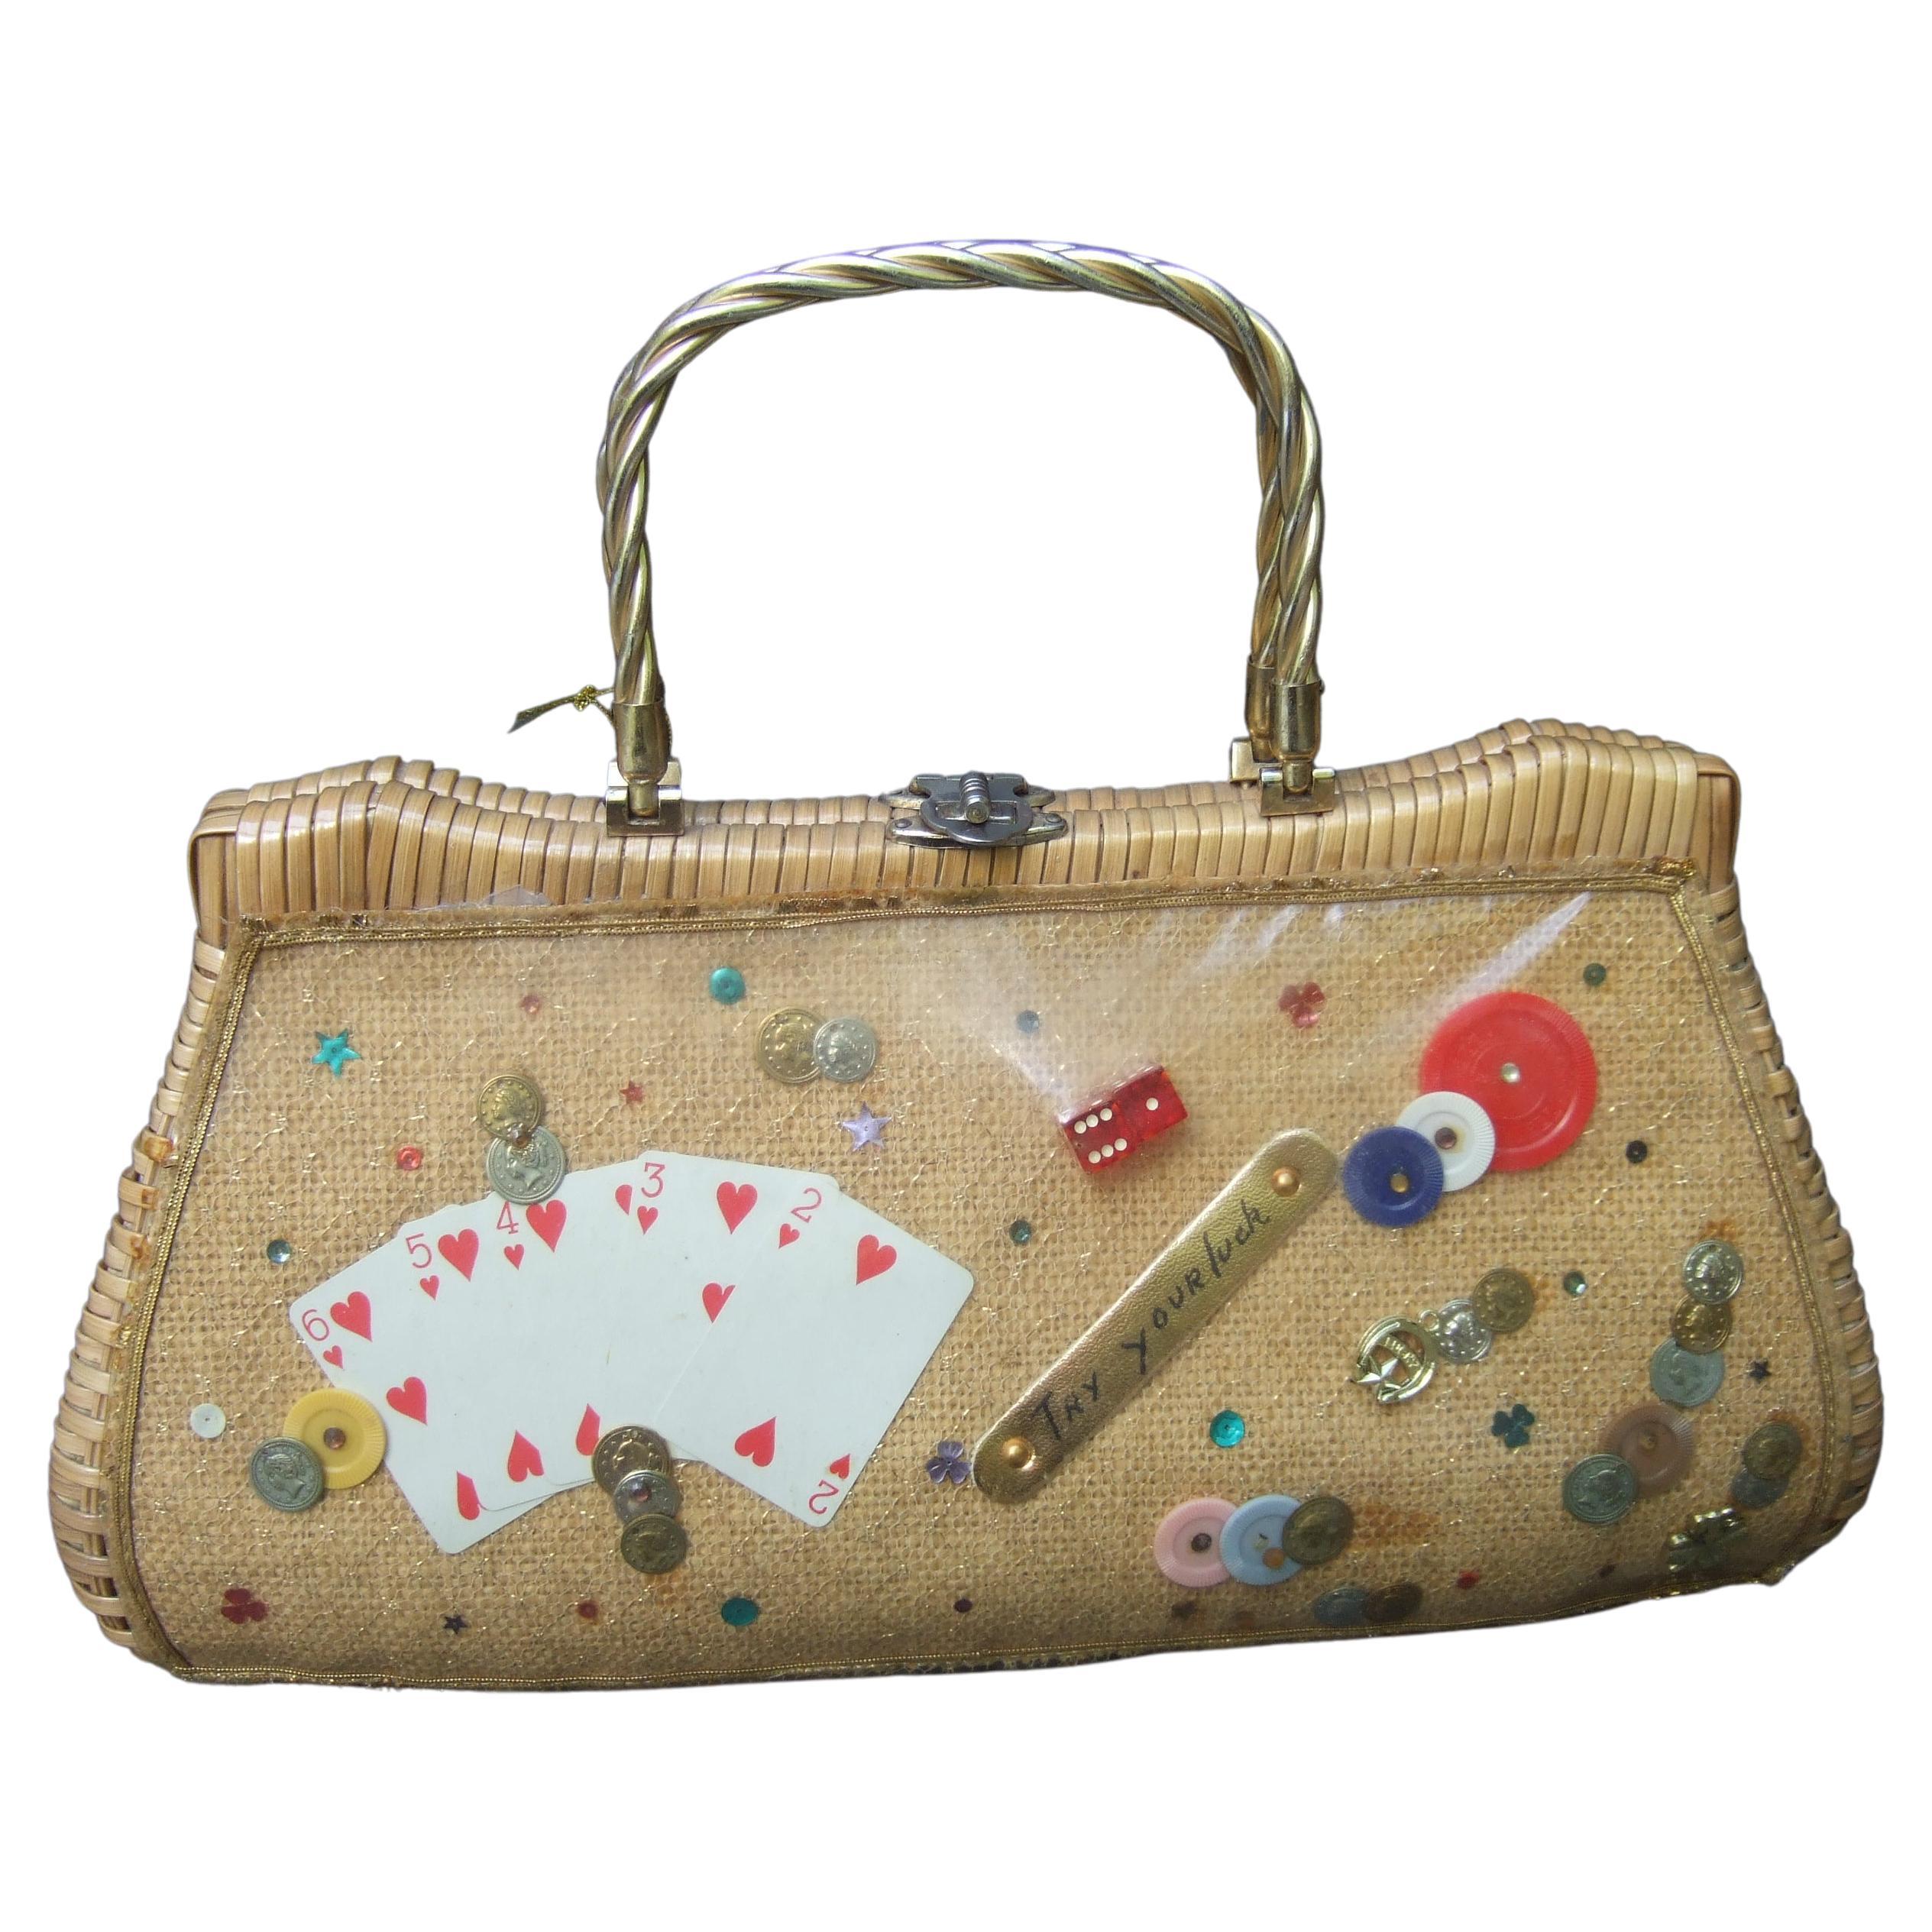 Whimsical Gambling Themed Woven Wicker Retro Handbag c 1960s For Sale